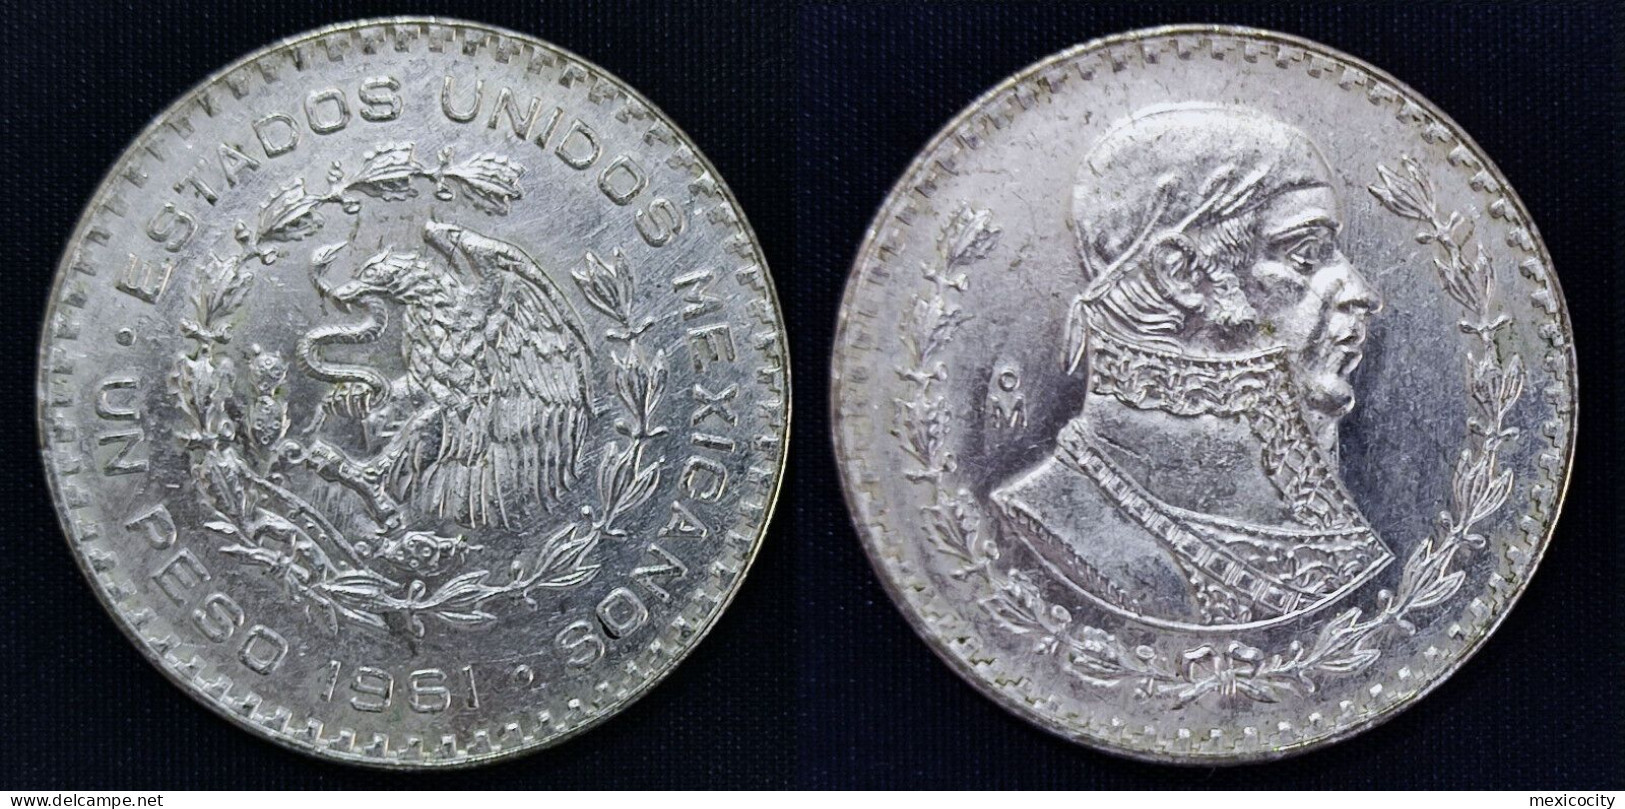 MEXICO 1961 $1 MORELOS 10 % Silver Peso, See Imgs., AU/BU Orig. Shine, Scarce Thus - Messico